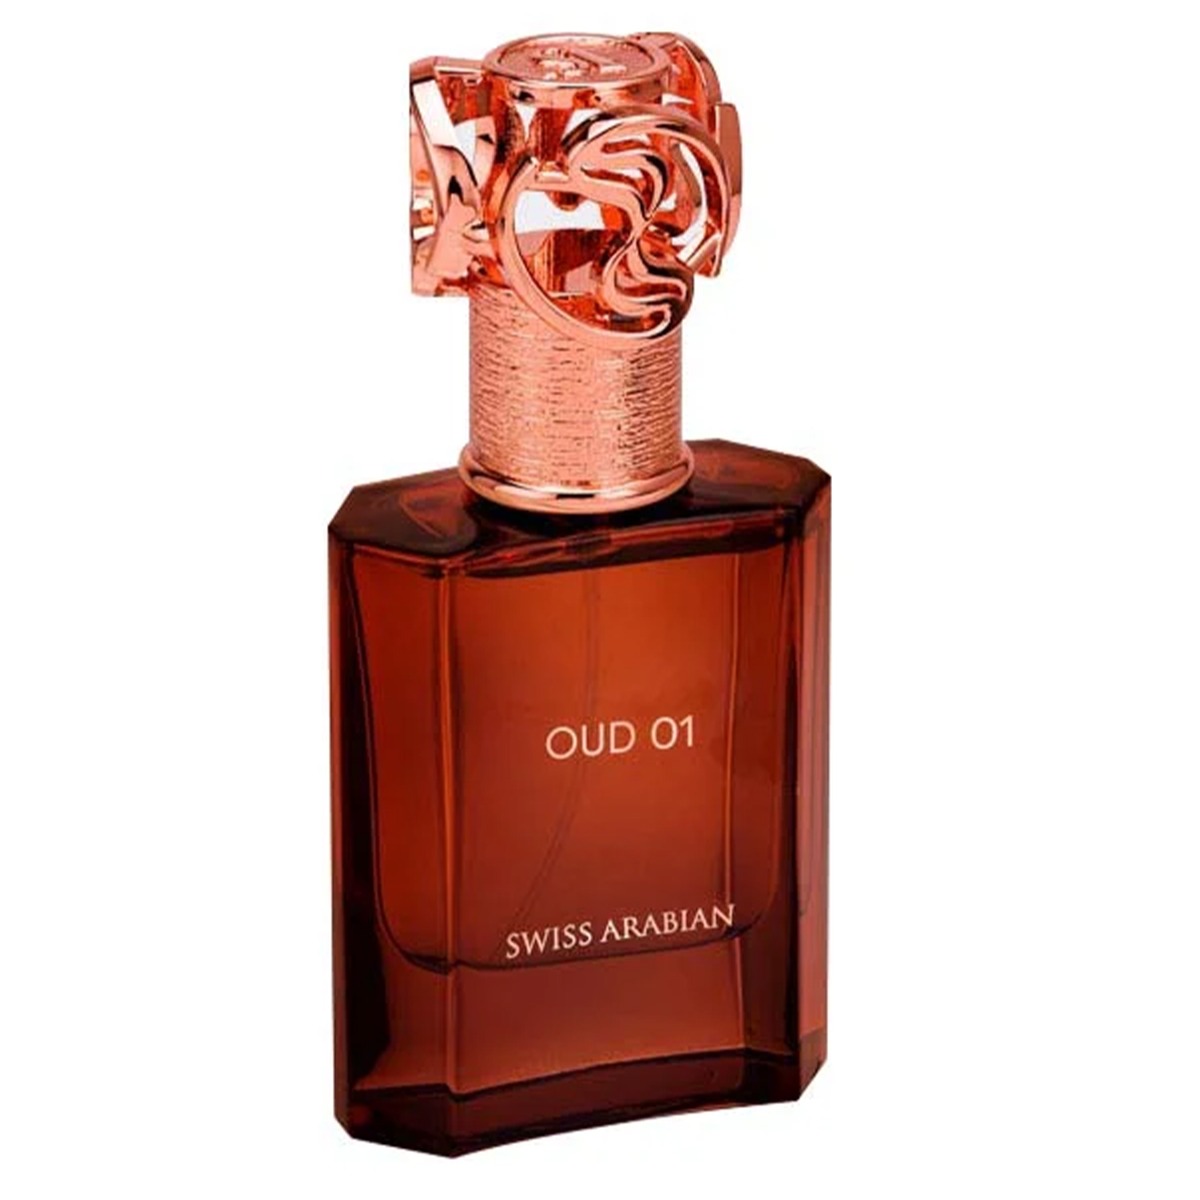 Swiss Arabian Oud 01 Perfume, 50ml